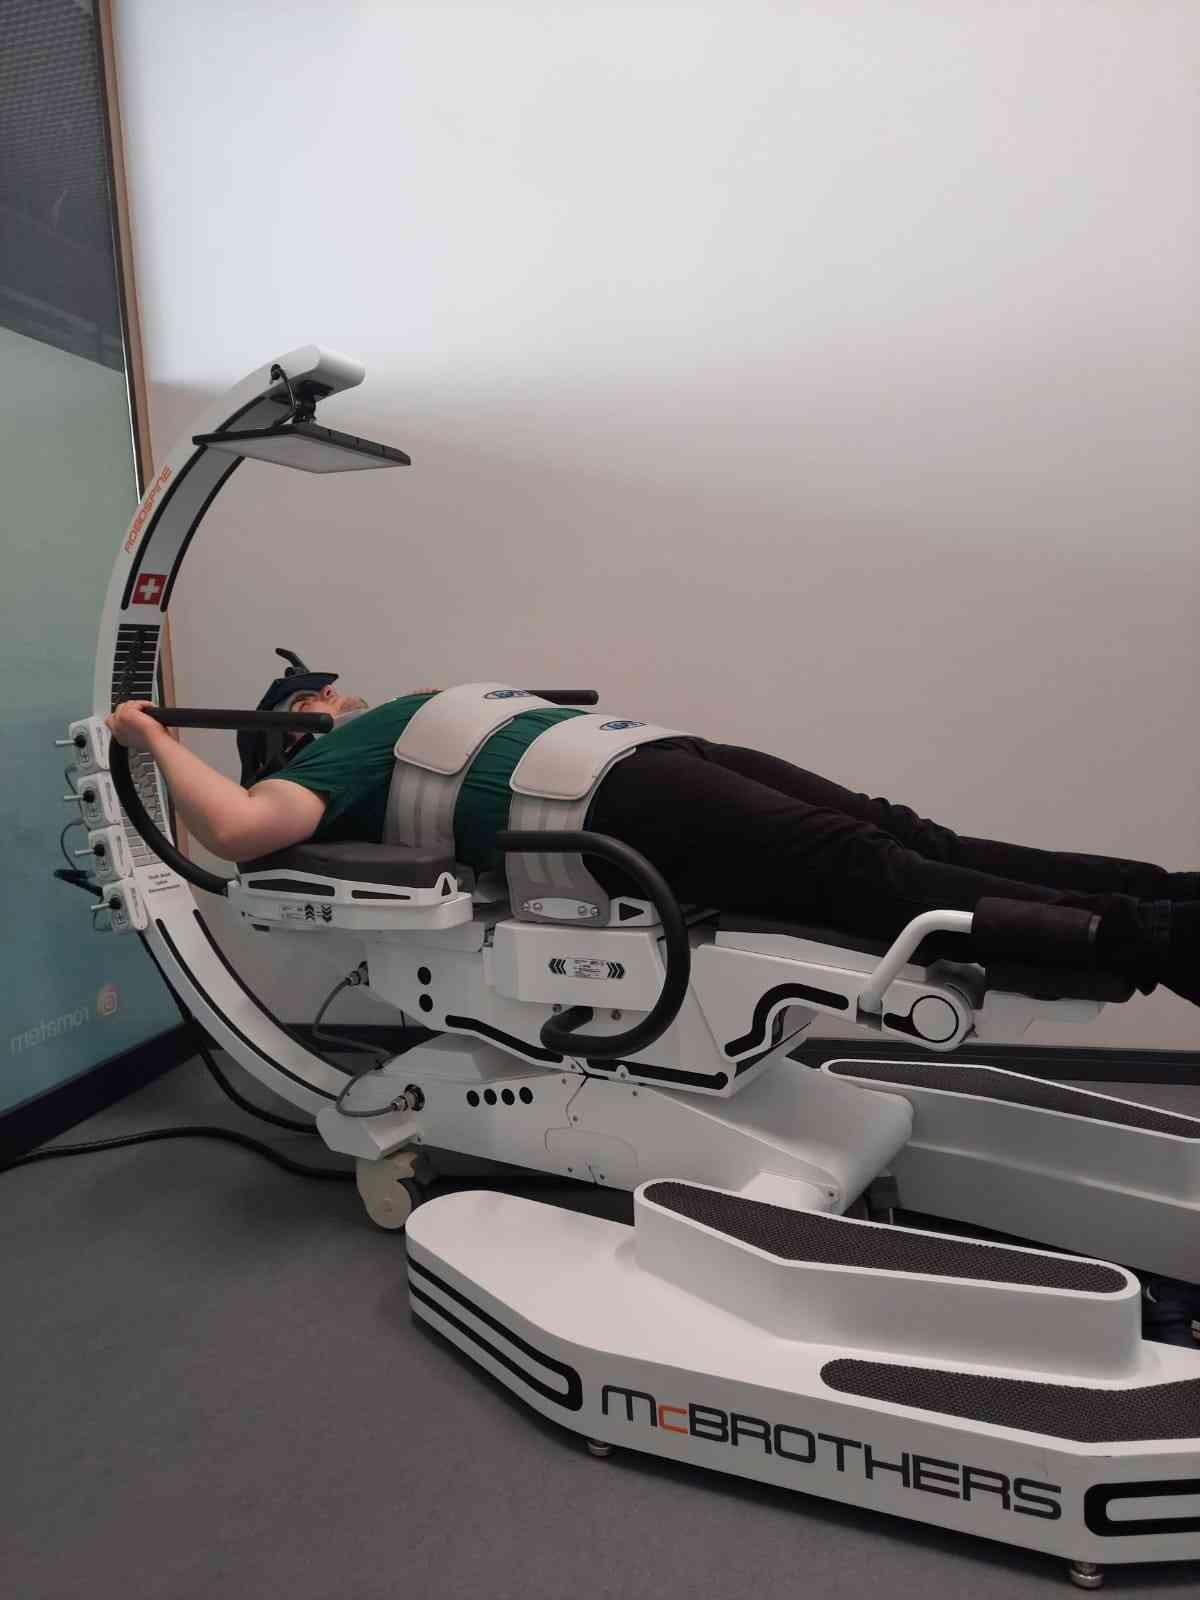 Fizik tedavide termal kürler ile çağ atlatan Romatem, omurilik düzleşmesi, bel ve boyun fıtıklarını yüksek teknolojili robotlarla tedavi ediyor ...